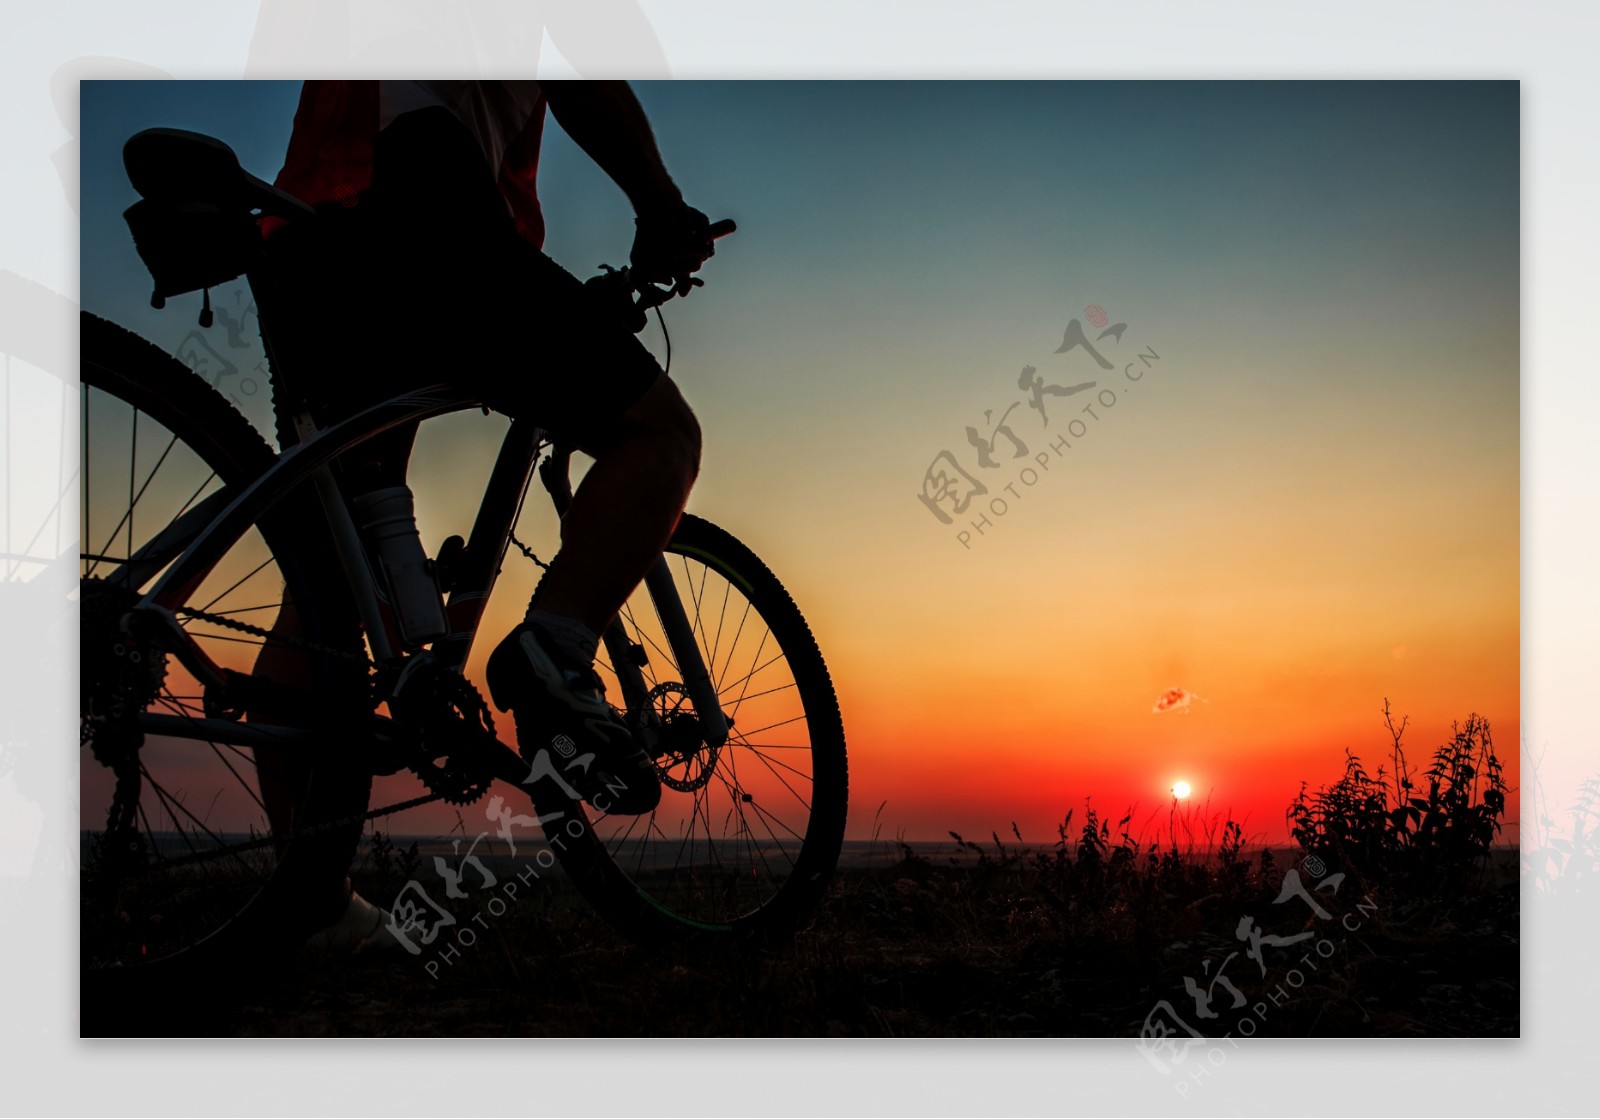 黄昏美景与骑行运动员图片